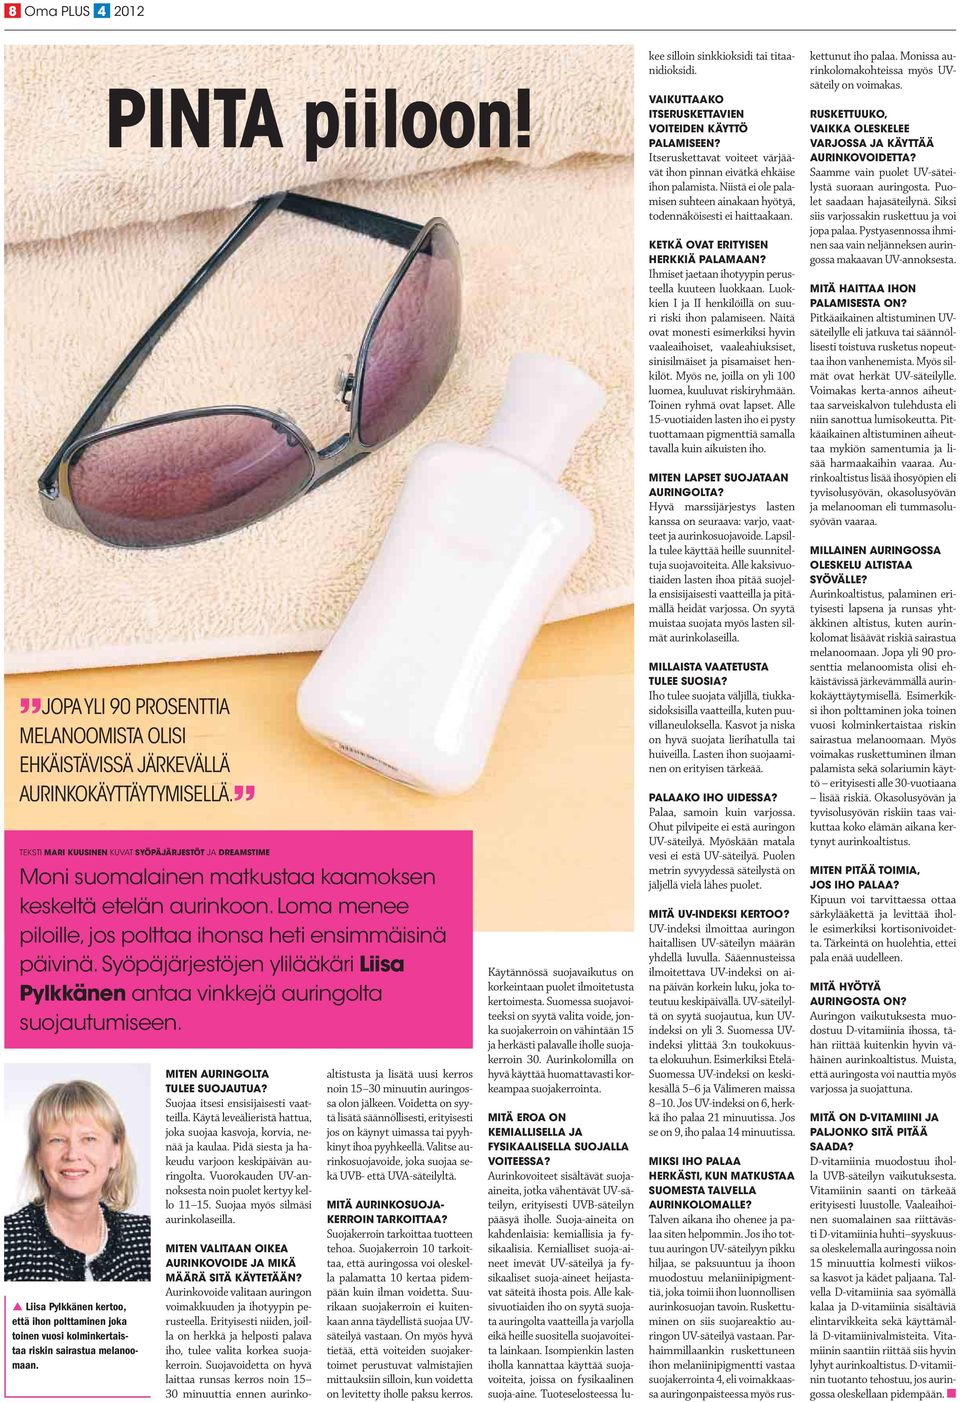 Syöpäjärjestöjen ylilääkäri Liisa Pylkkänen antaa vinkkejä auringolta suojautumiseen. p Liisa Pylkkänen kertoo, että ihon polttaminen joka toinen vuosi kolminkertaistaa riskin sairastua melanoomaan.